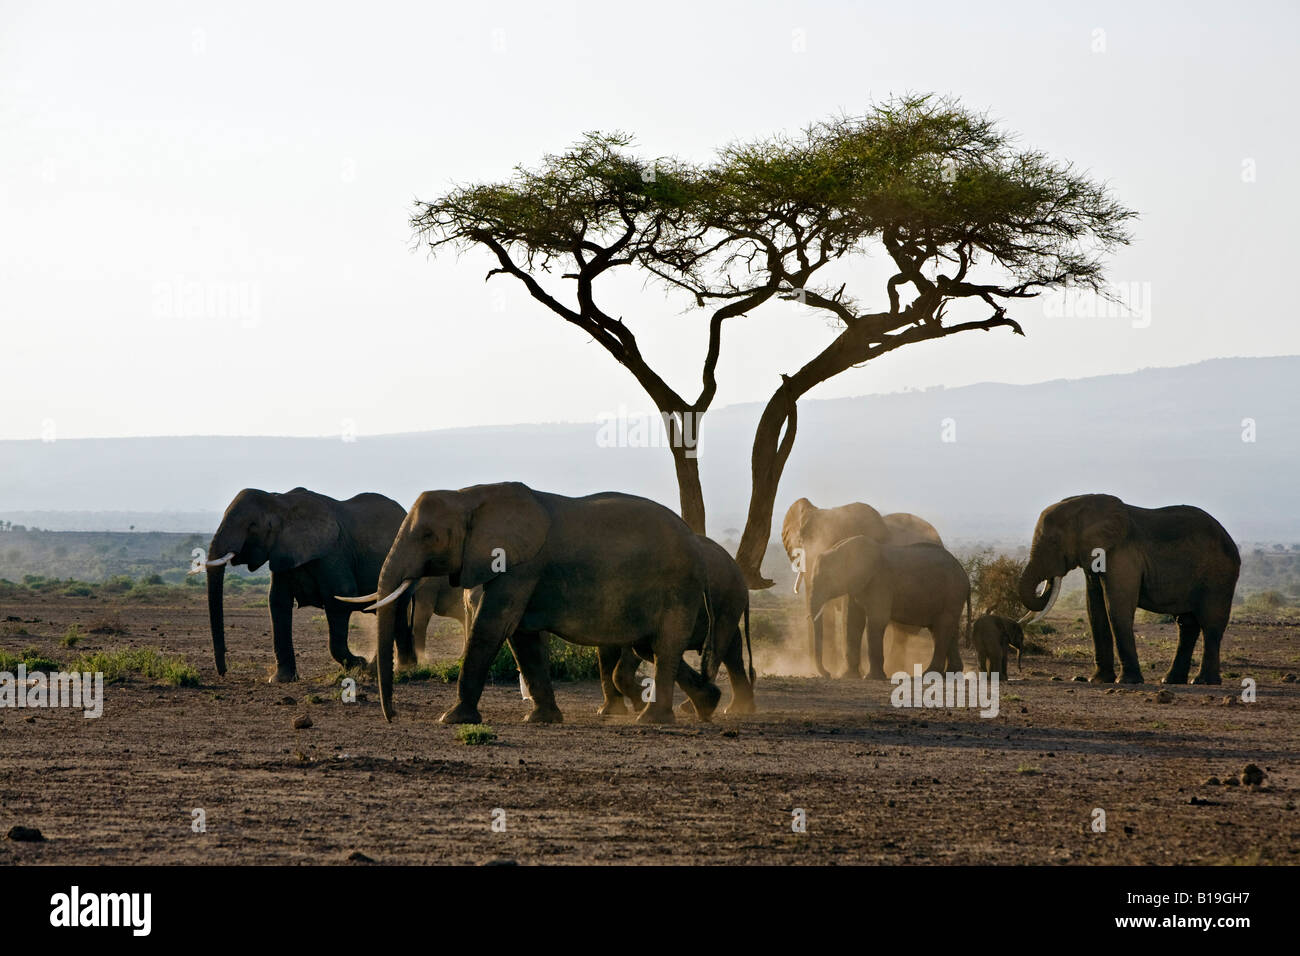 Kenya, Amboseli, Amboseli National Park. Elephants (Loxodonta africana) pause to dust themselves before heading to the swamp. Stock Photo